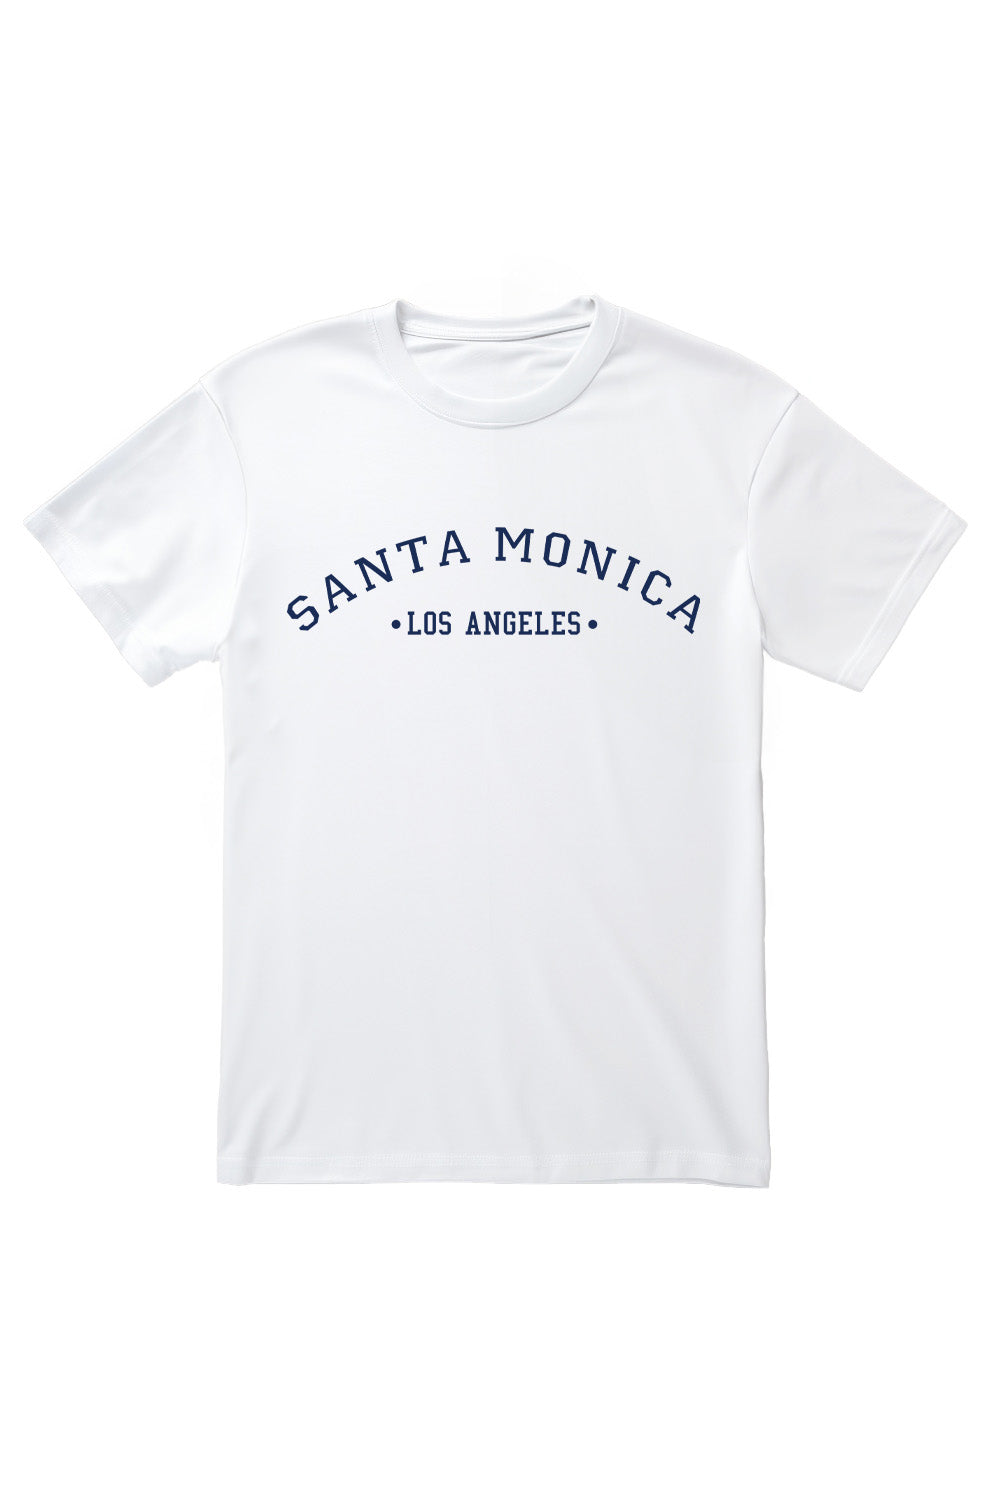 Santa Monica T-Shirt in White (Custom Packs)